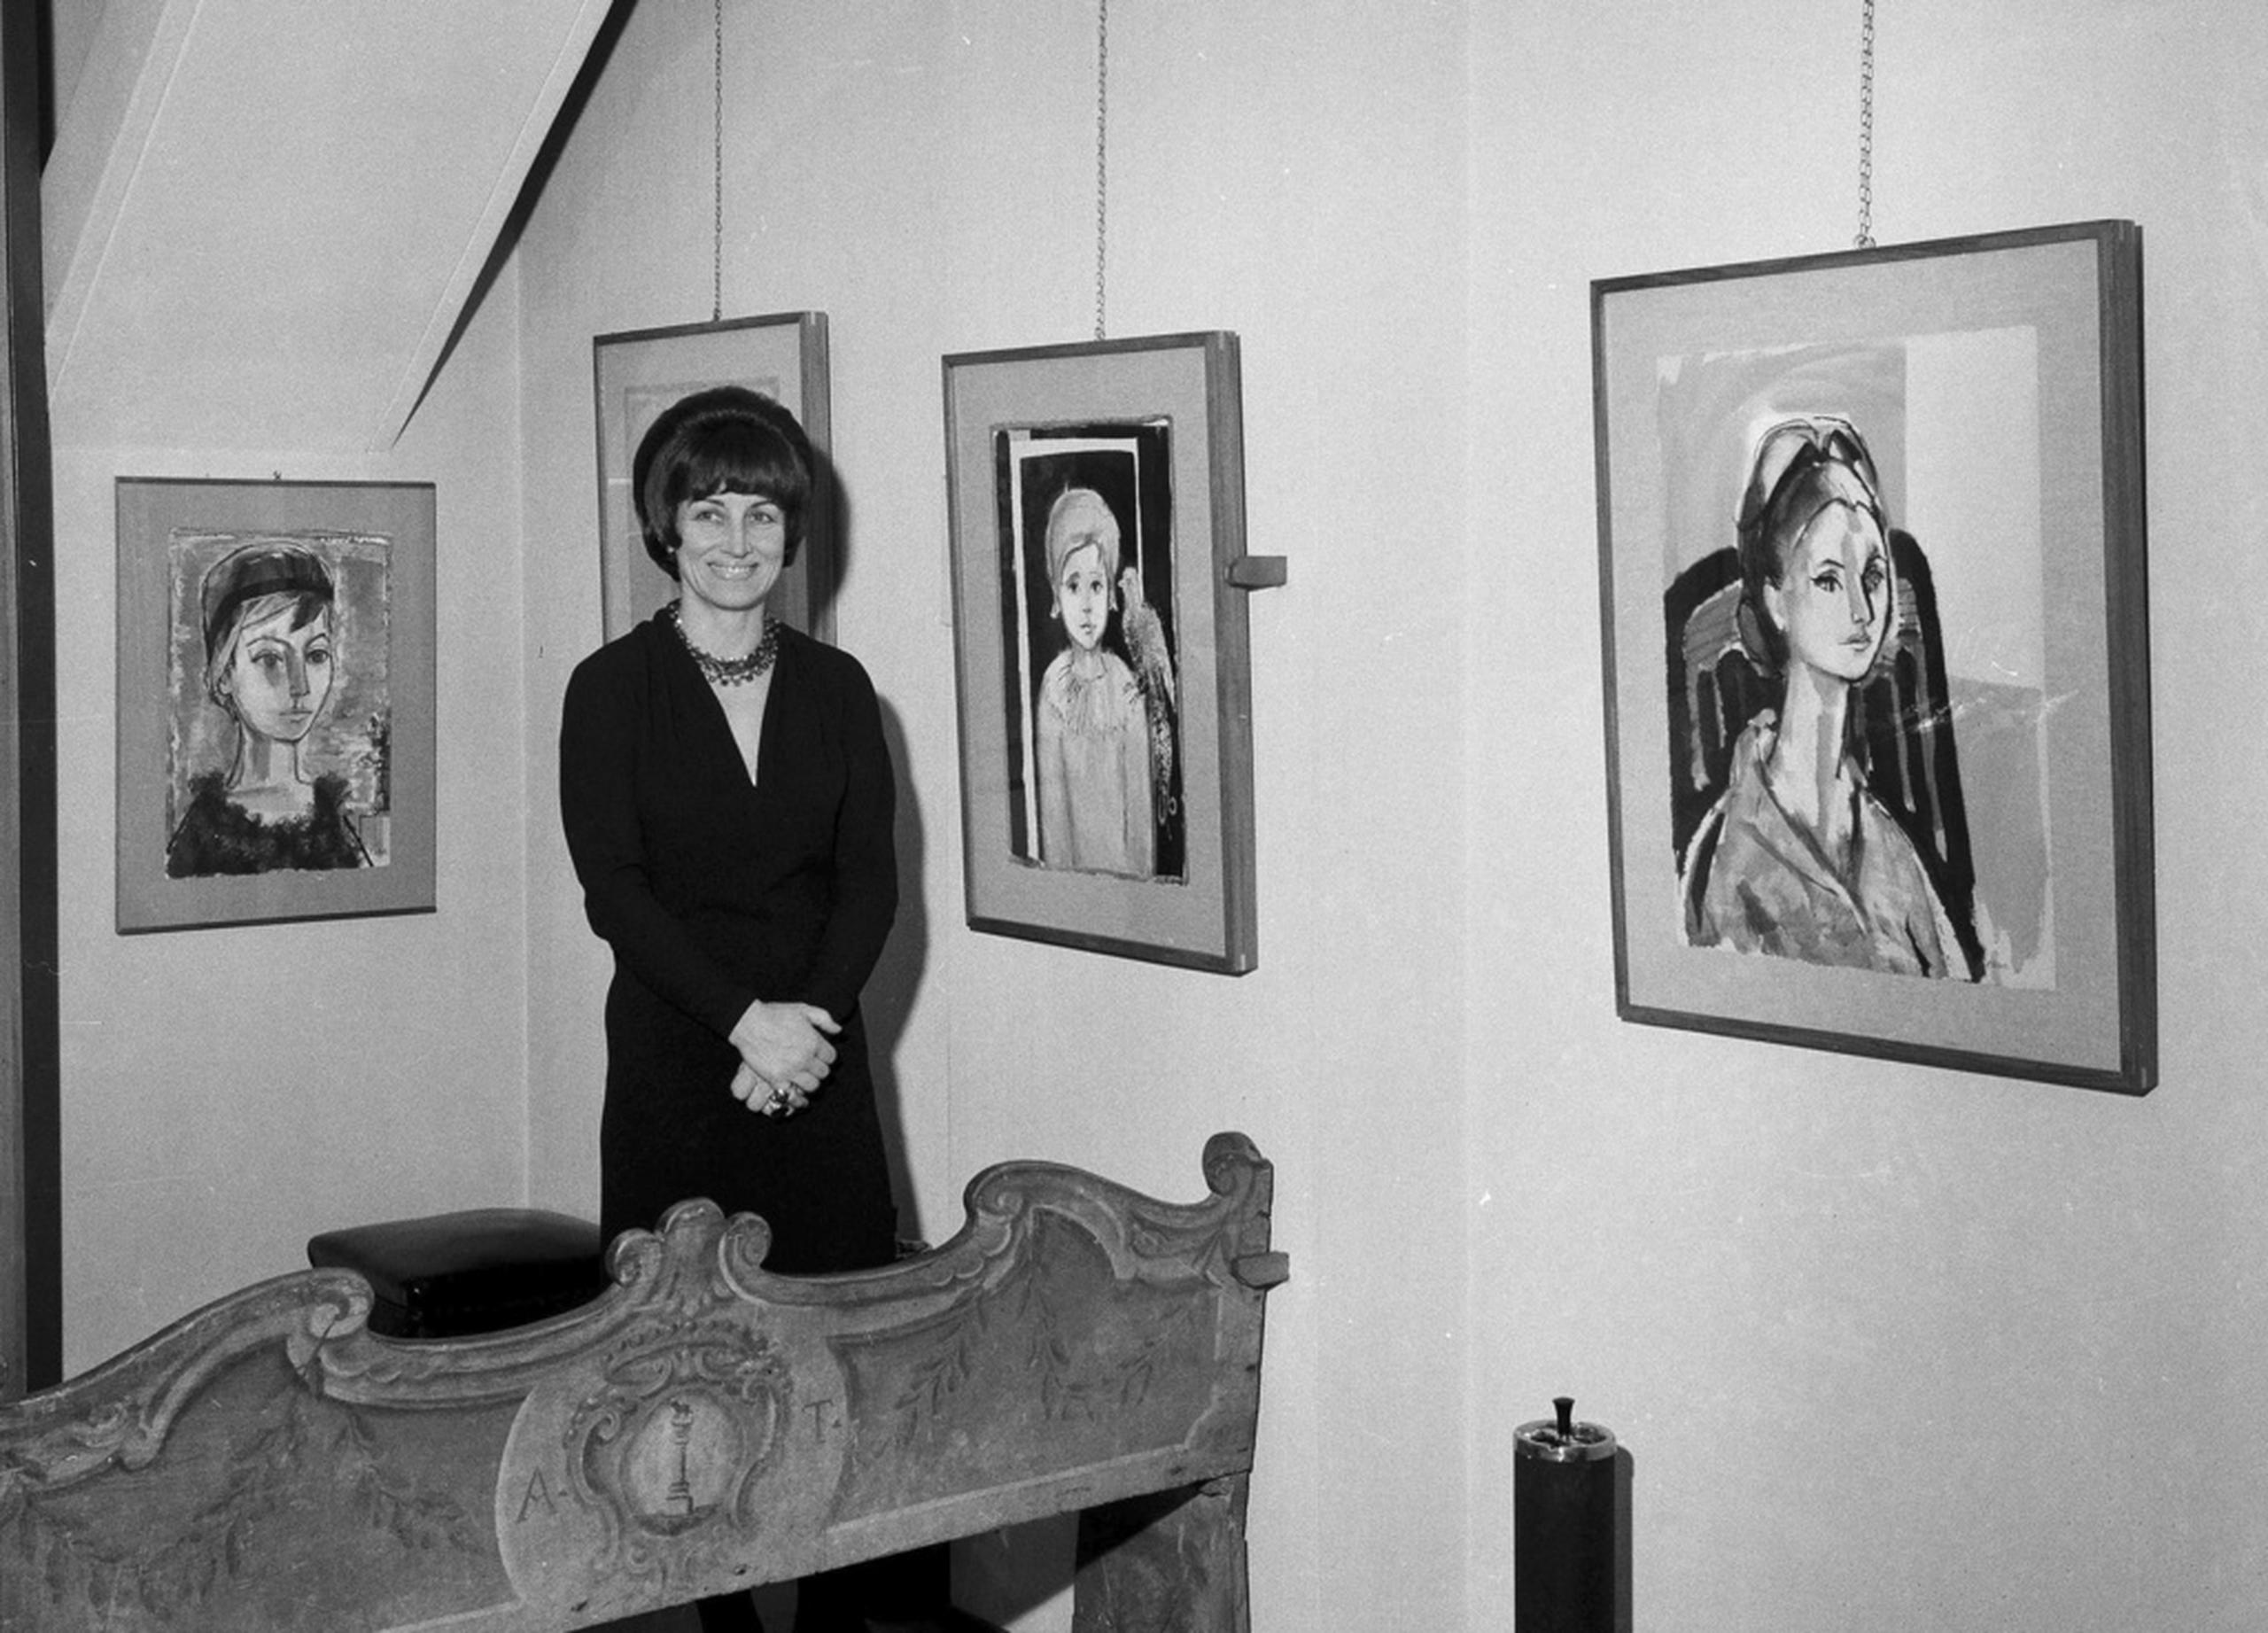 La artista Françoise Gilot posa con su obra en una exposición de arte personal en Milán, el 21 de diciembre de 1965.